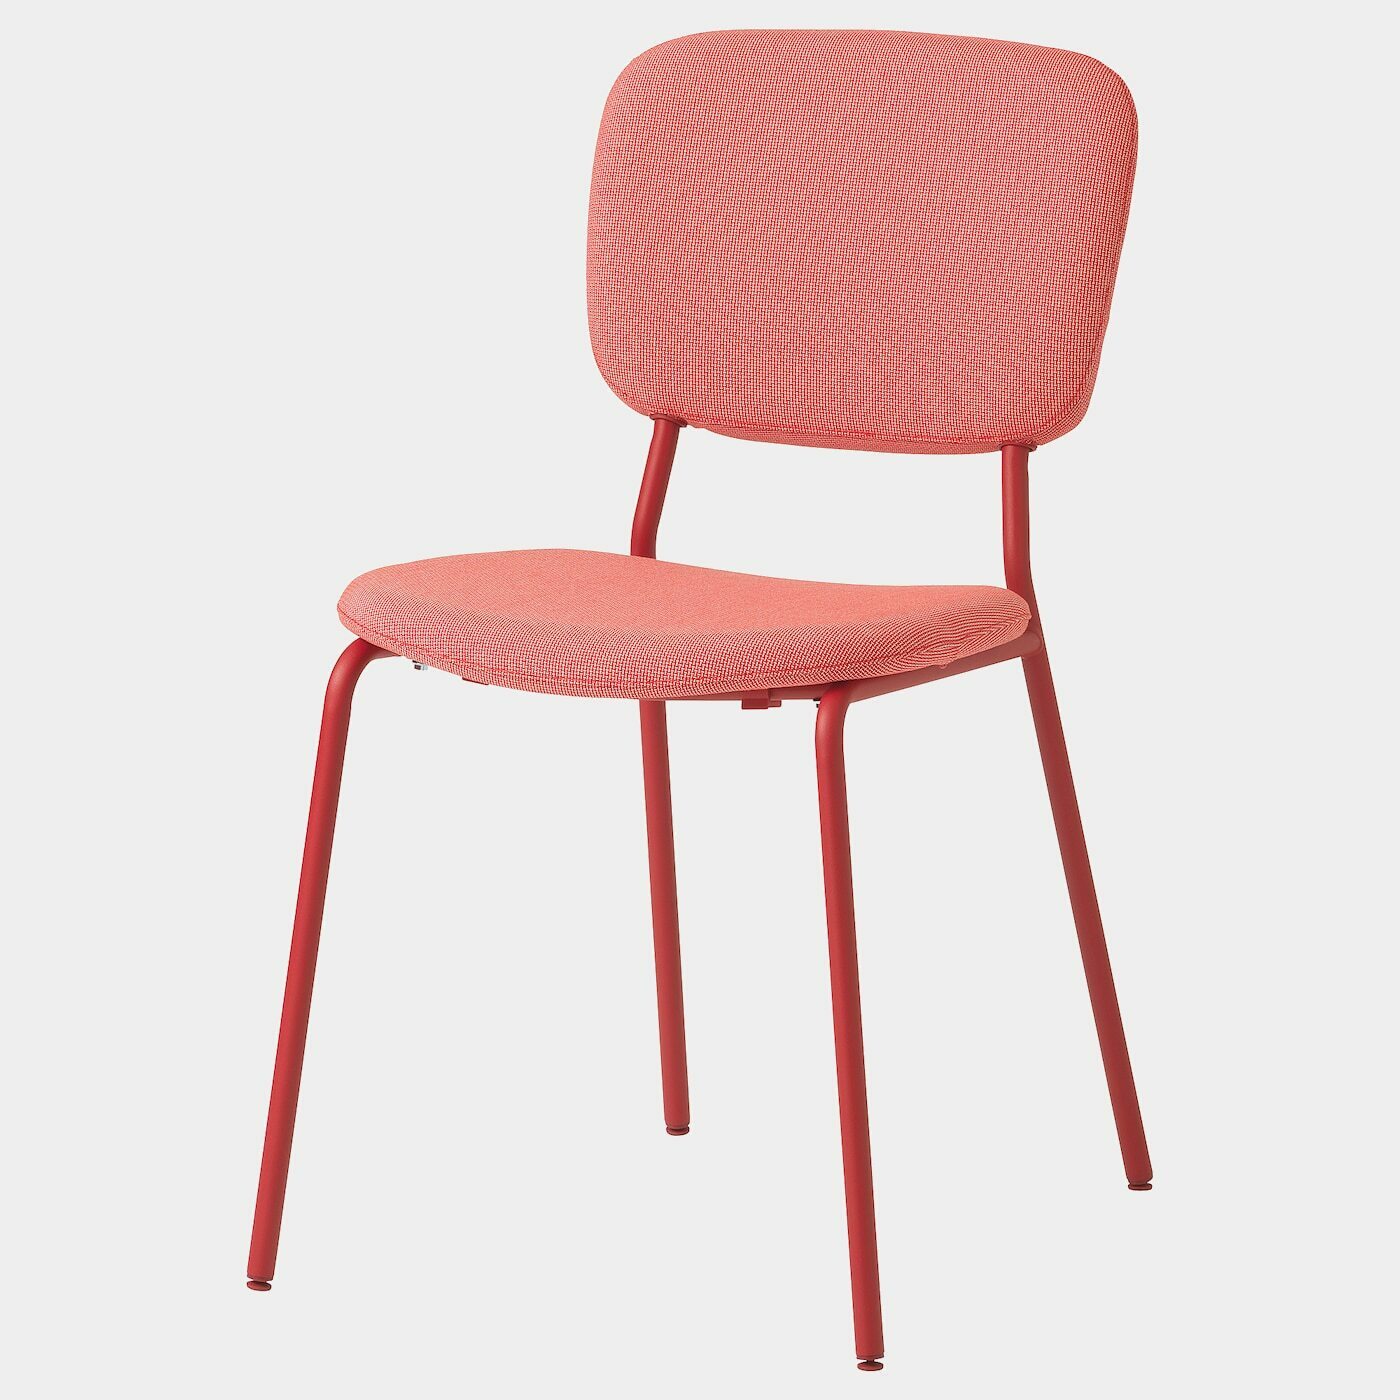 KARLJAN Stuhl  - Esszimmerstühle - Möbel Ideen für dein Zuhause von Home Trends. Möbel Trends von Social Media Influencer für dein Skandi Zuhause.